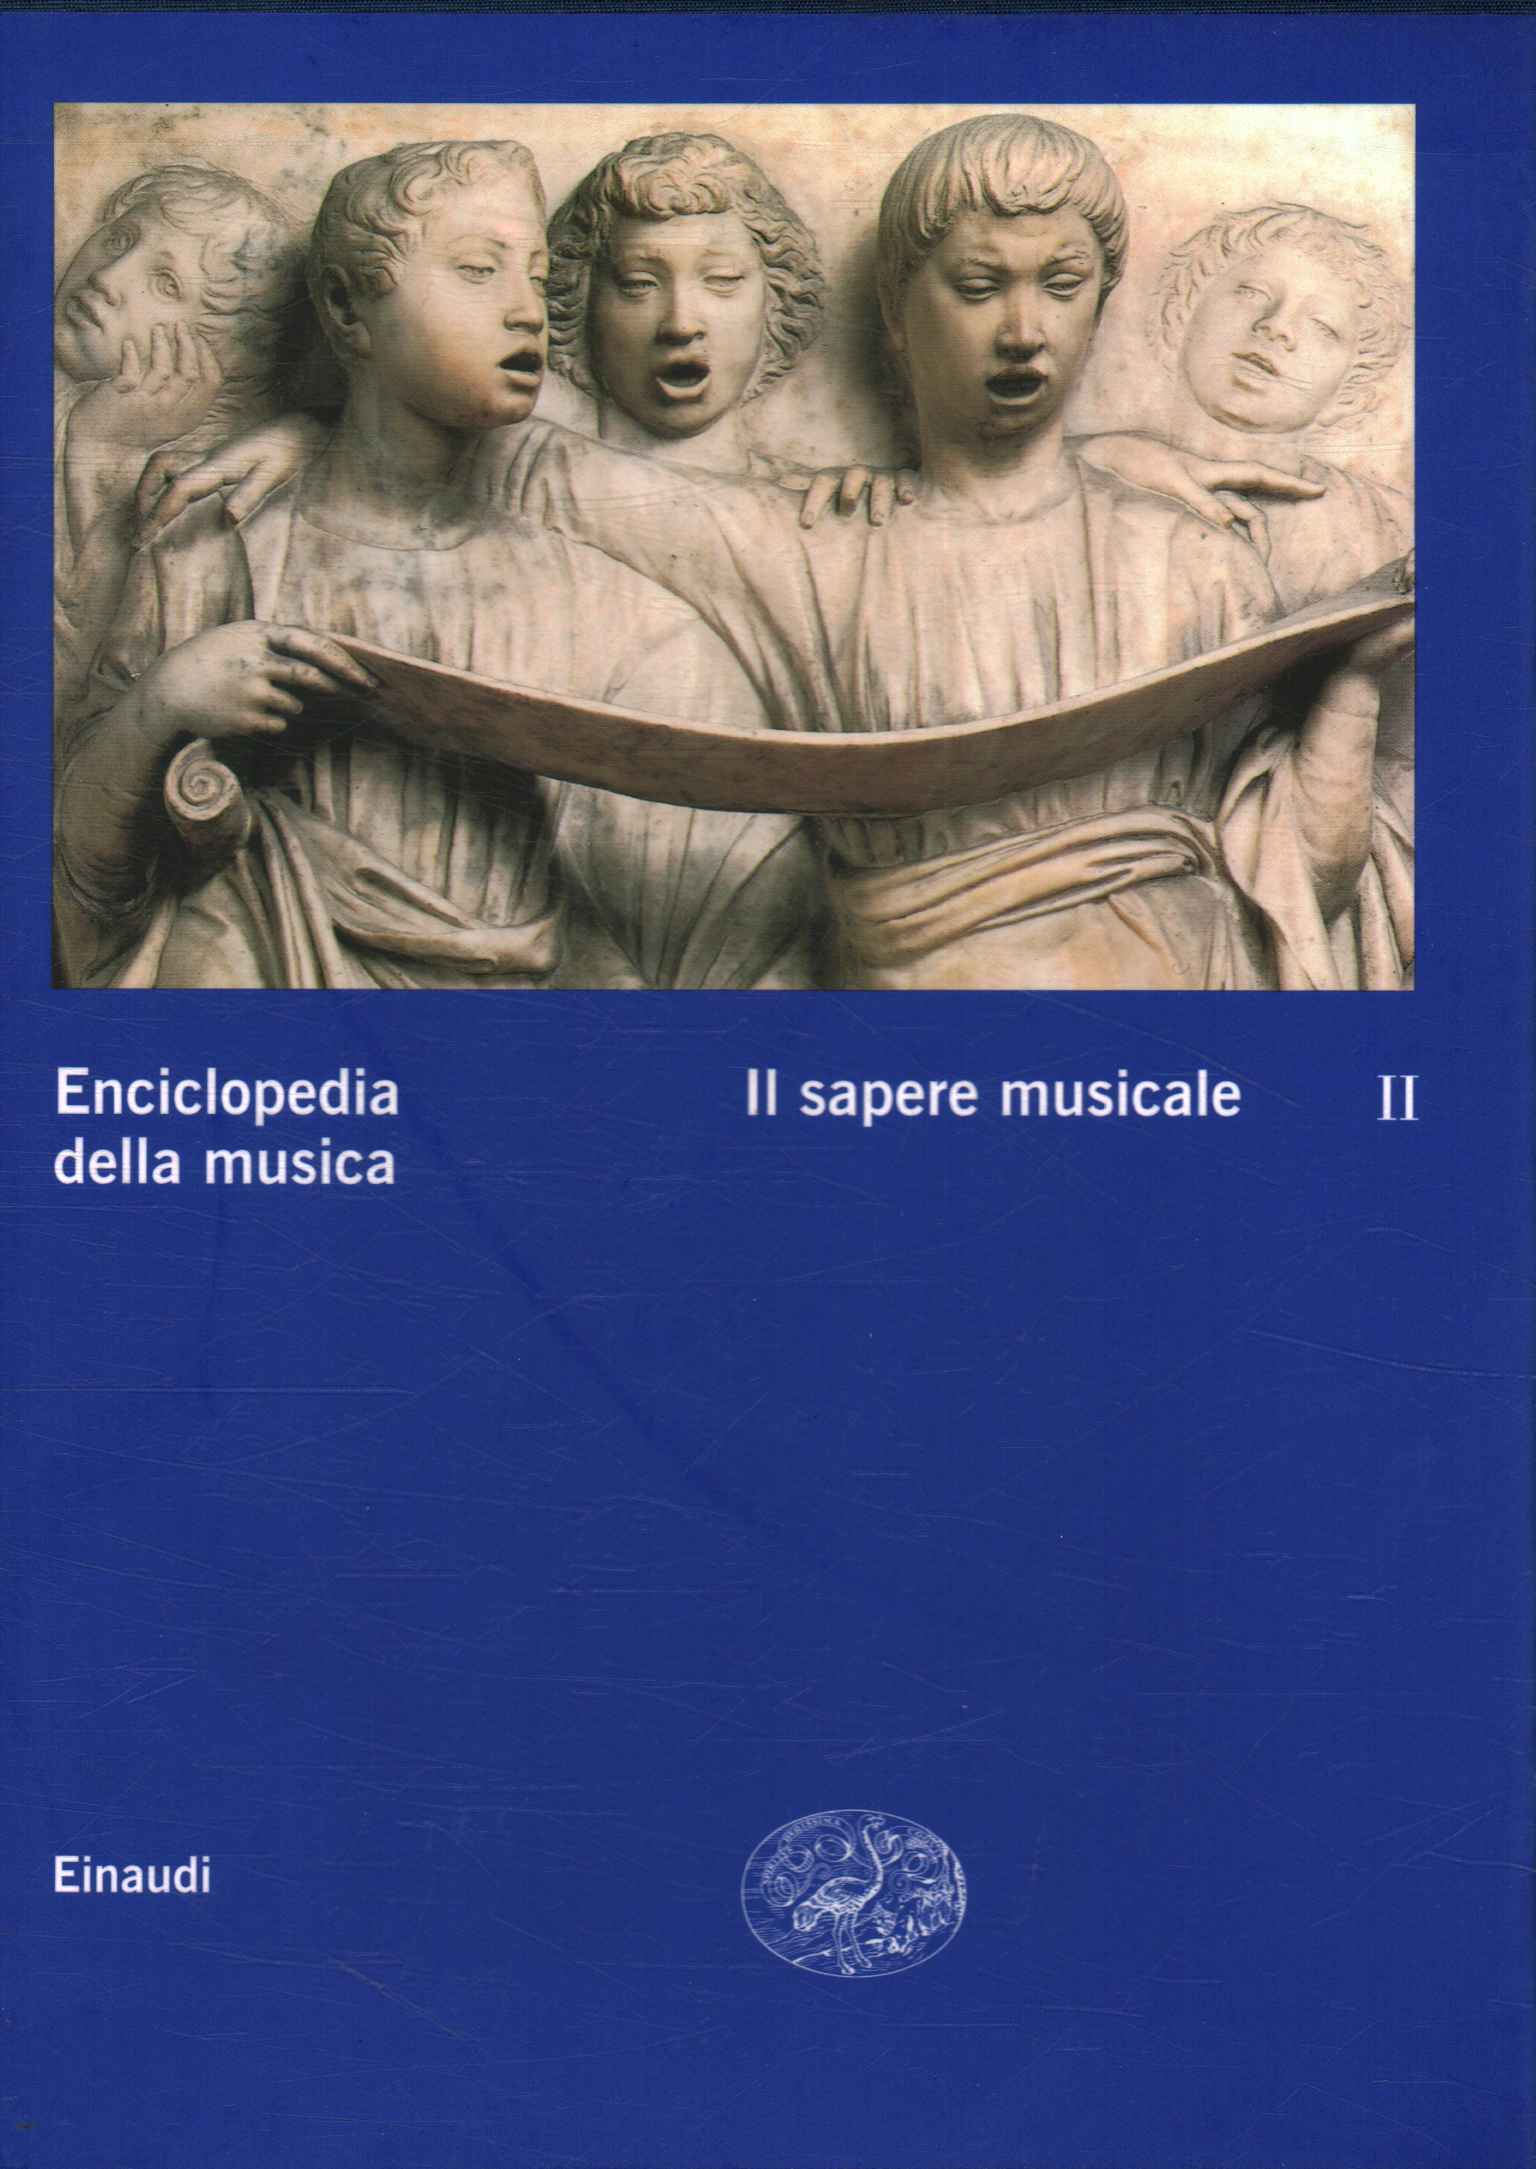 Enciclopedia de la música. conocimiento musus